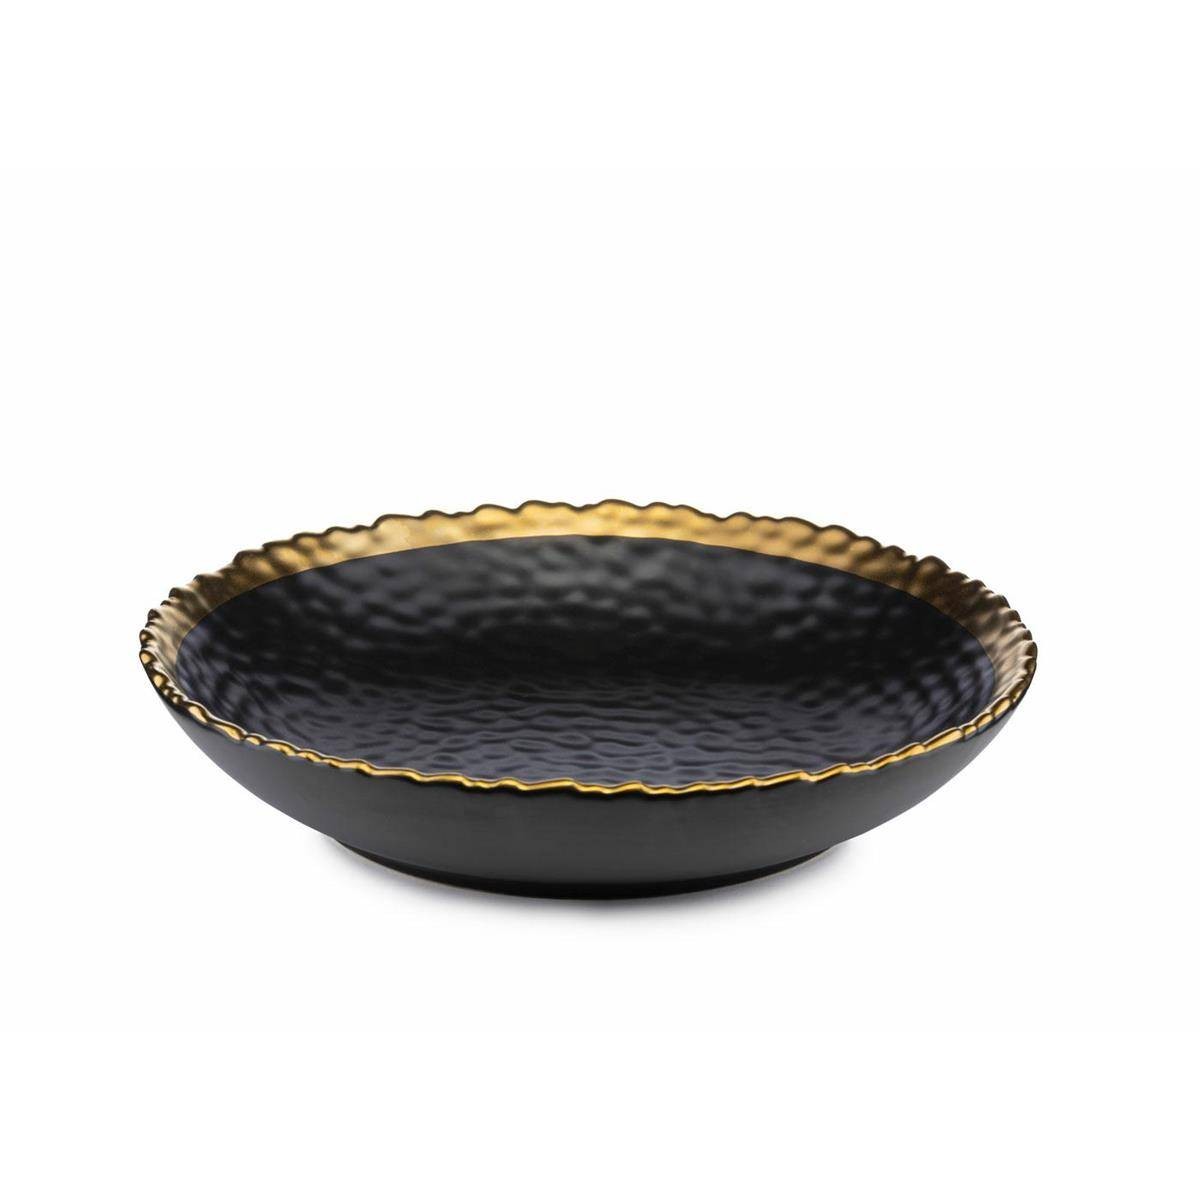 DekorStyle Hluboký keramicky talíř Kati 21 cm černý